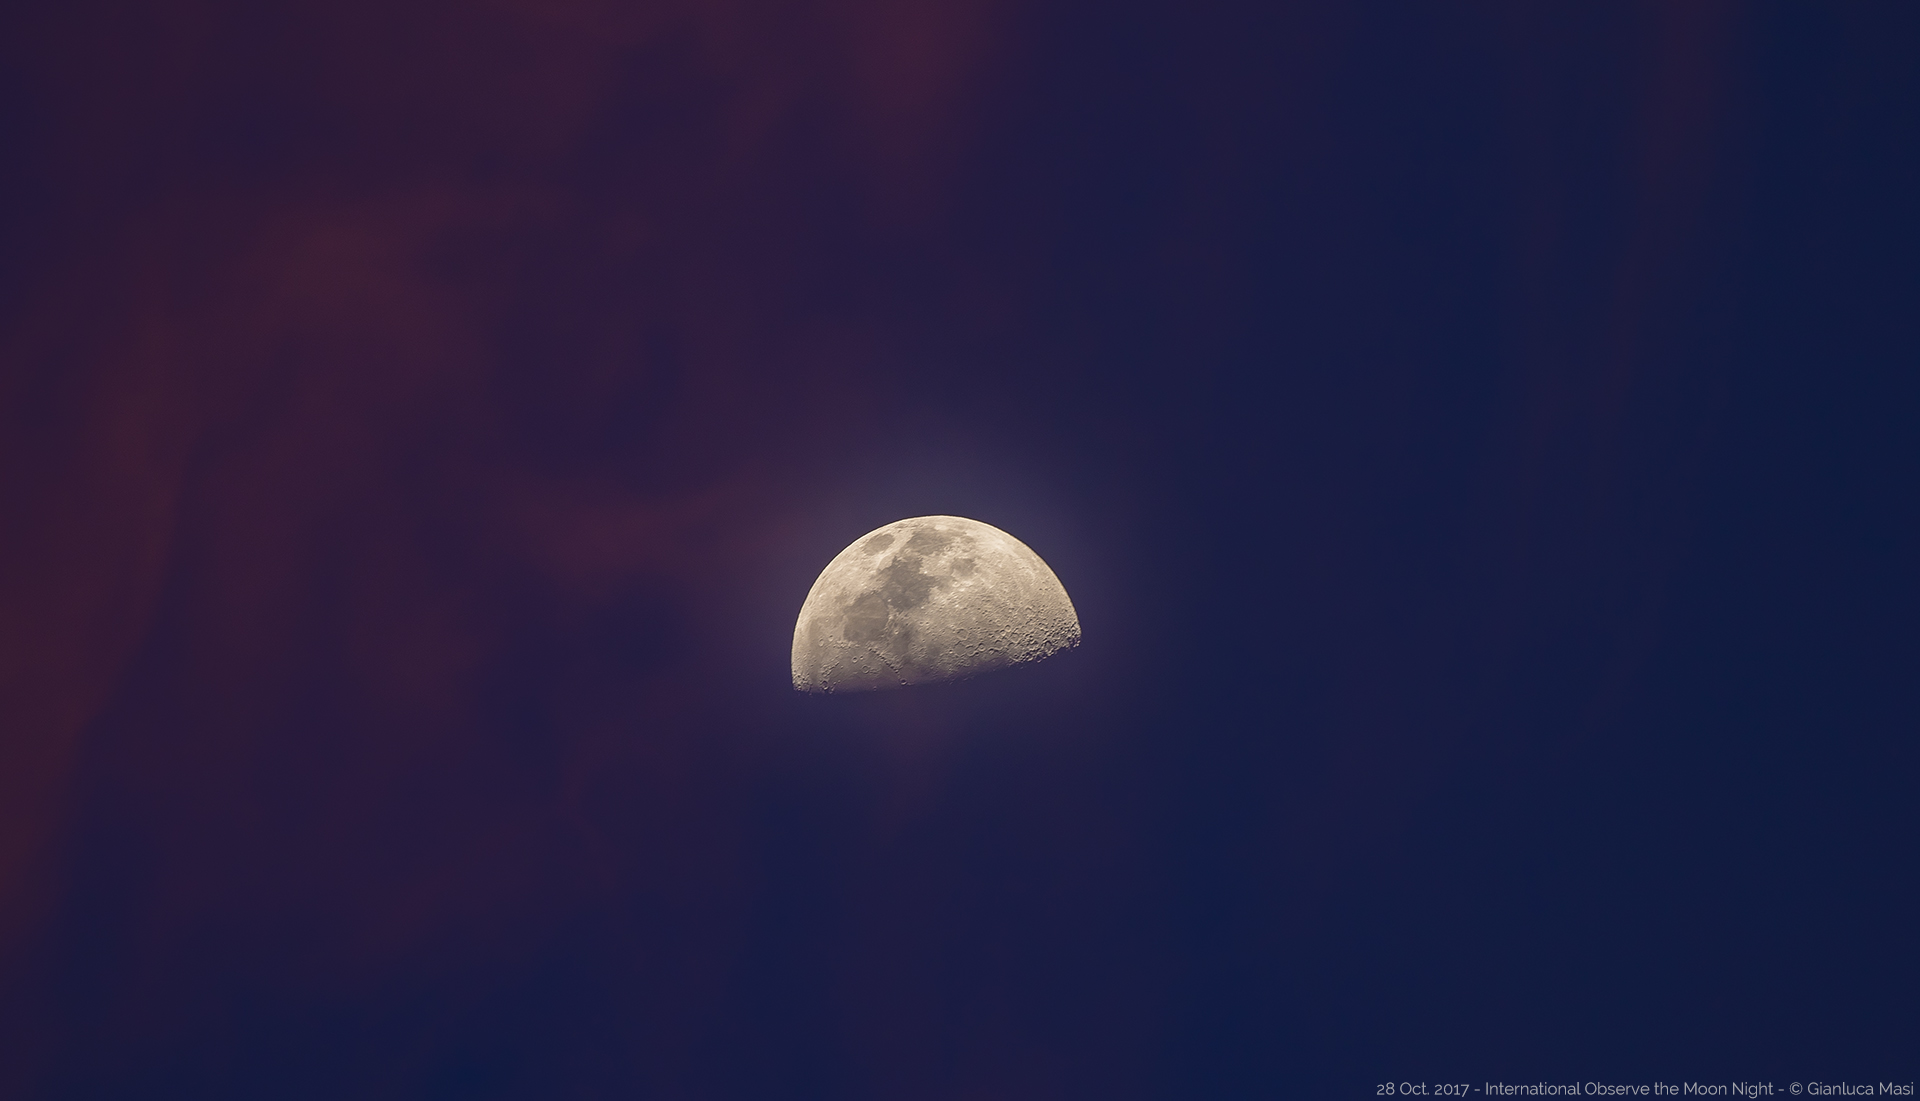 The Moon at sunset, during the International Observe the Moon Night 2017 - La Luna al tramonto, durante la Notte Internazionale della Luna del 2017 (28 Oct. 2017)